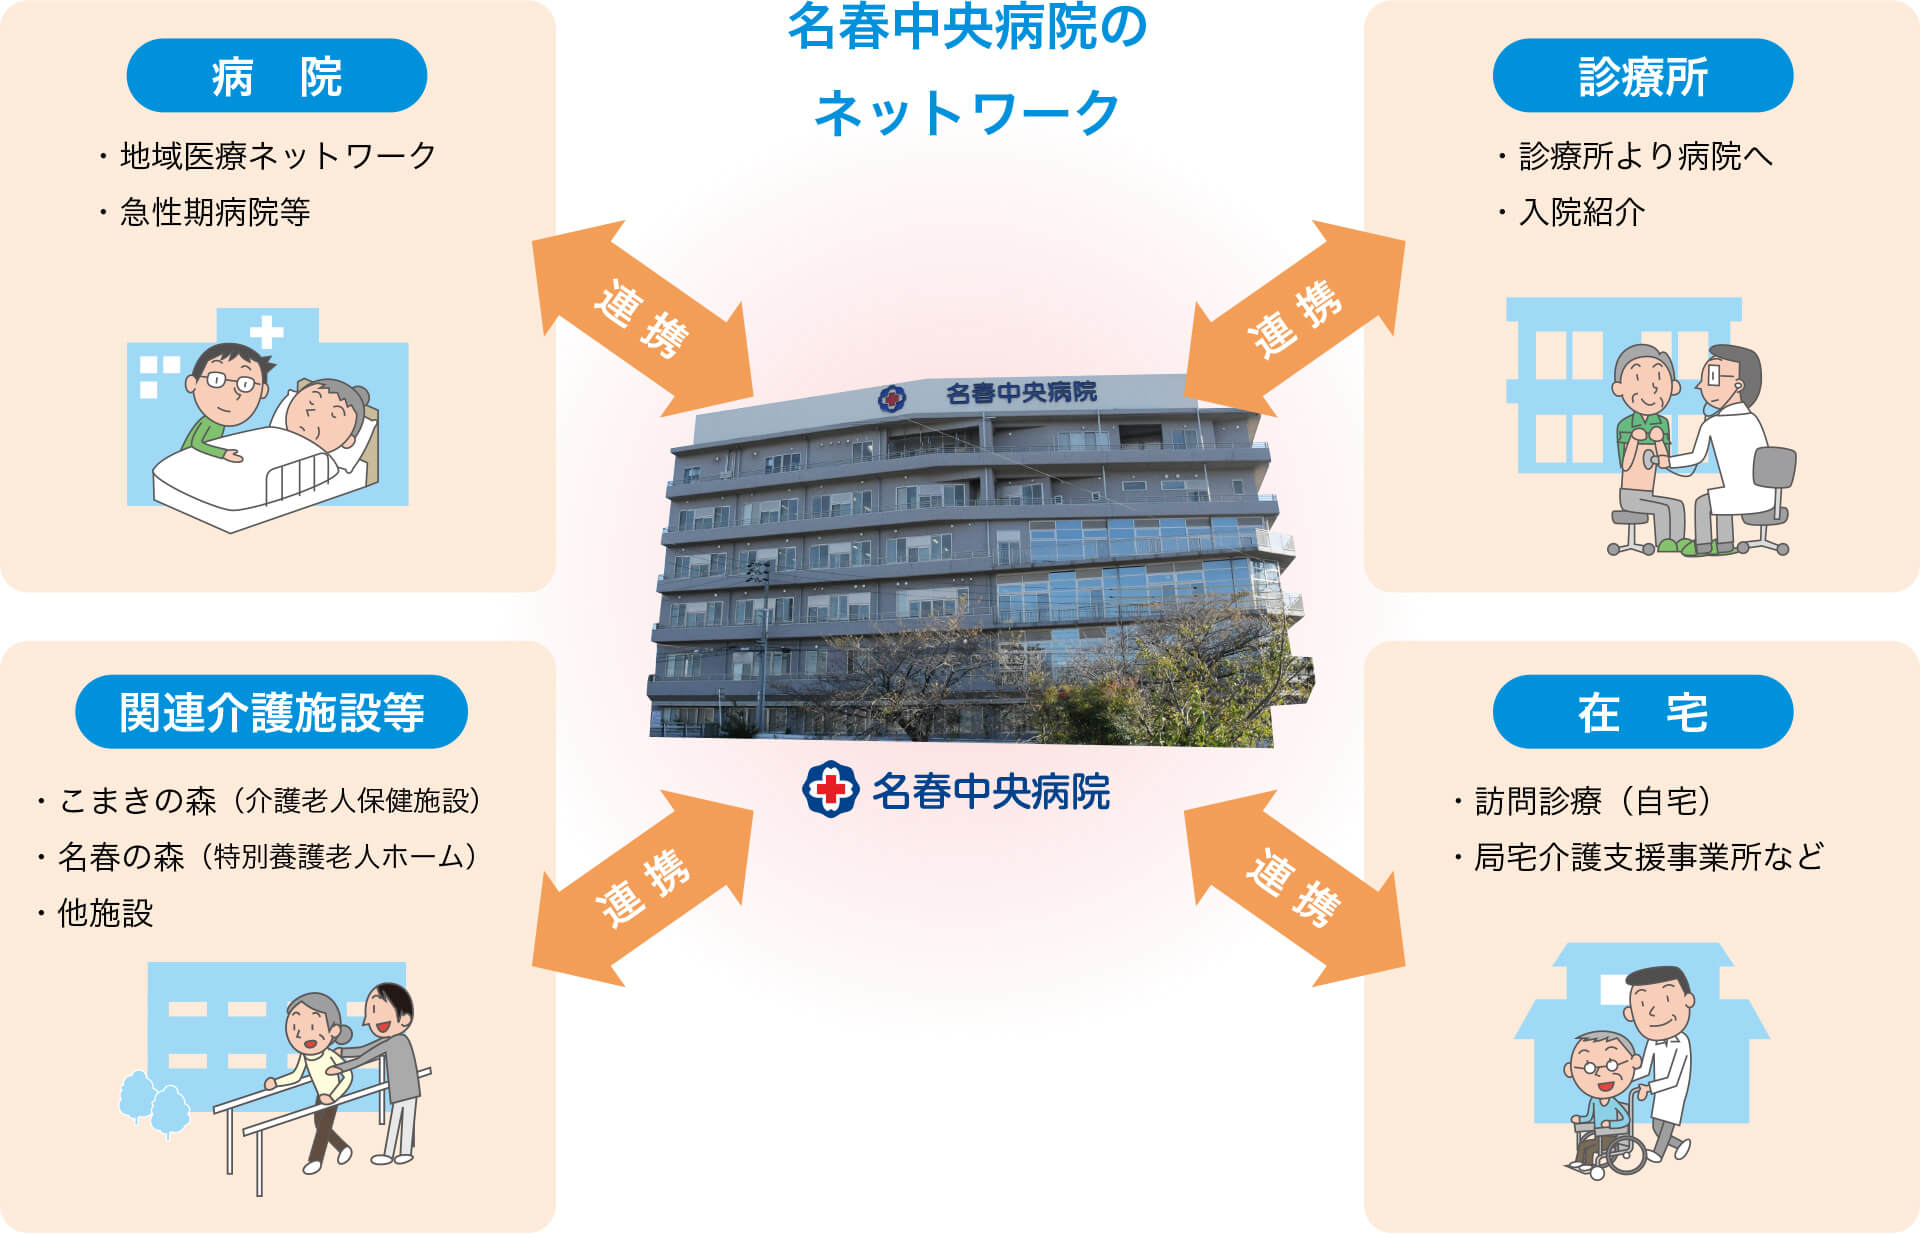 名春中央病院のネットワーク